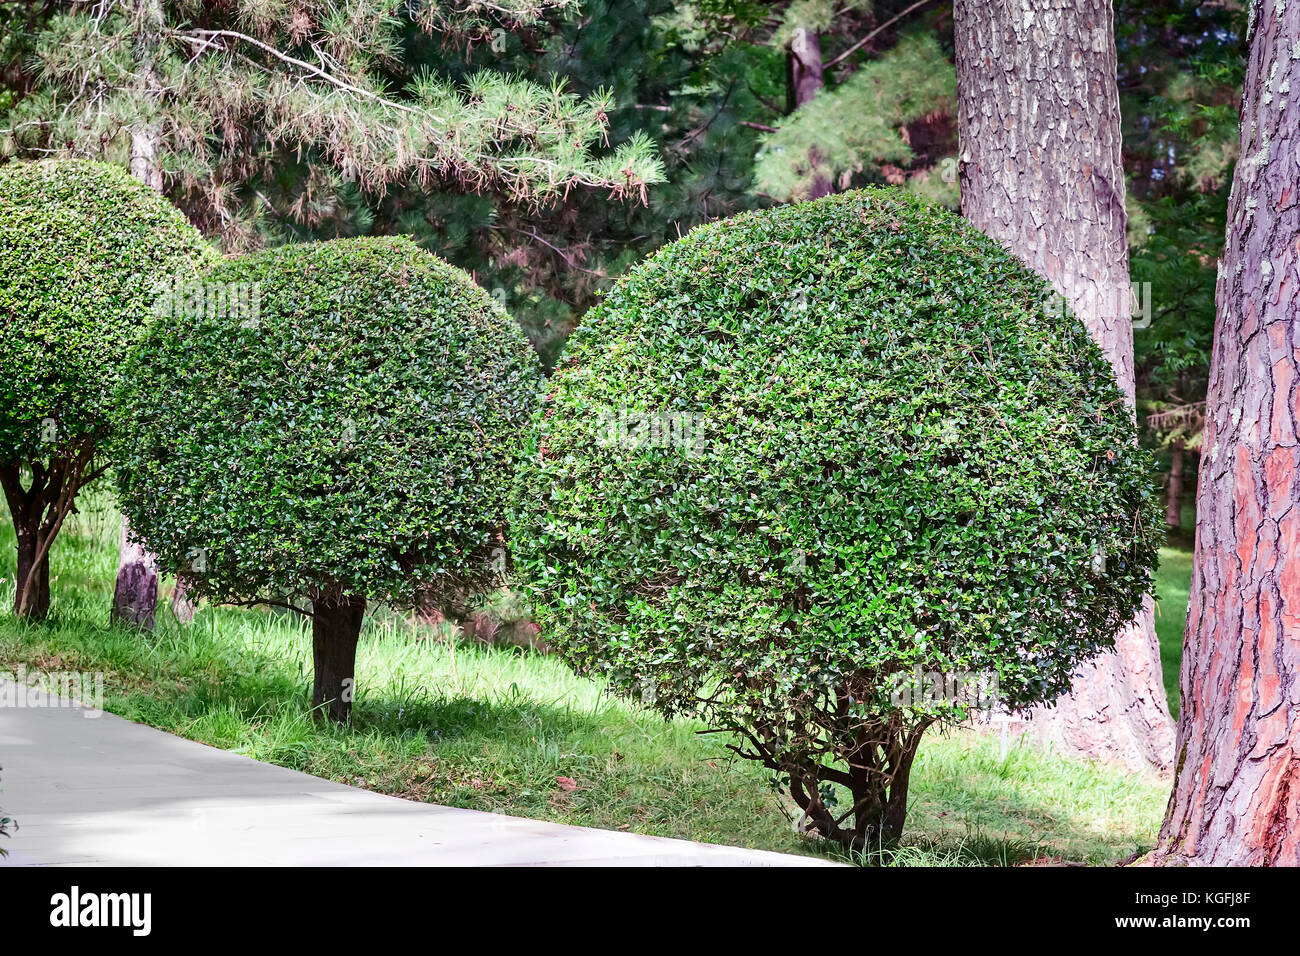 La sección del arboretum, con plantas bien recortado en forma de bola. Foto de stock